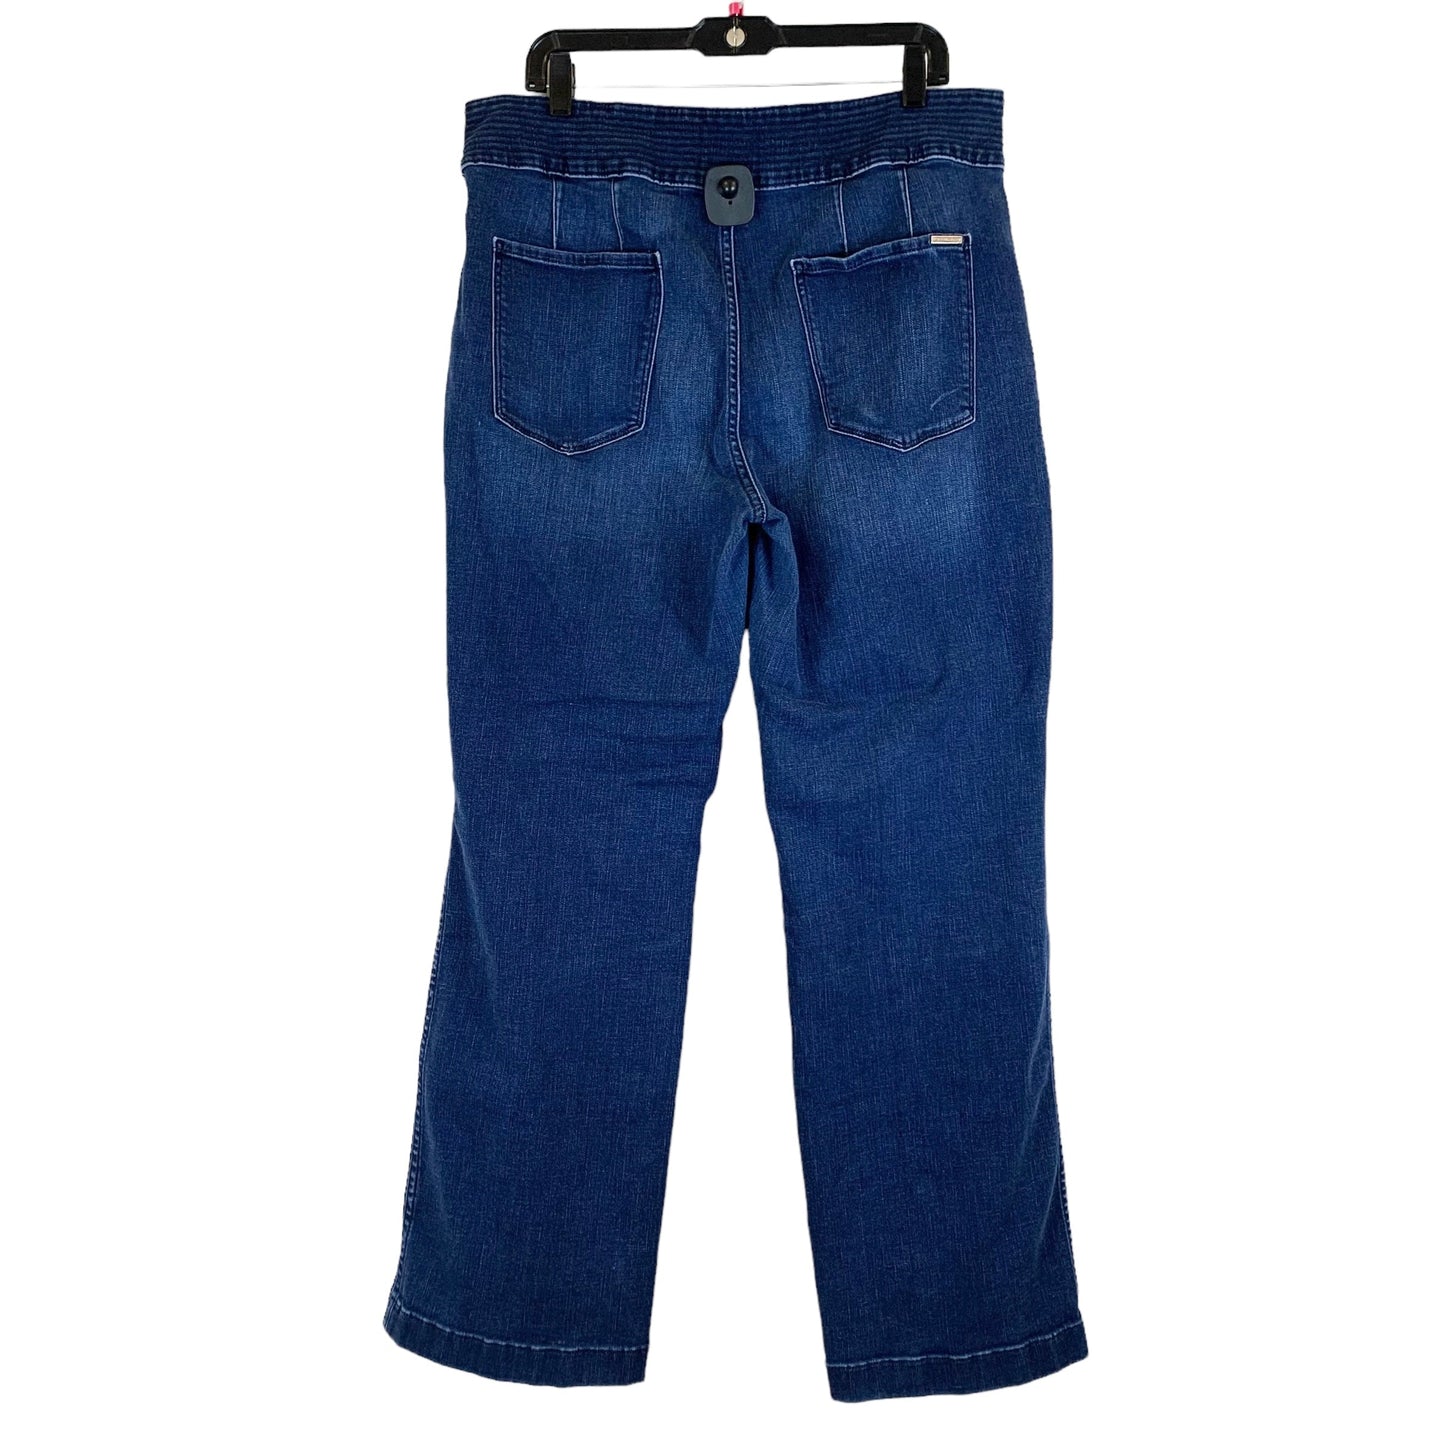 Blue Denim Jeans Boot Cut White House Black Market, Size 16